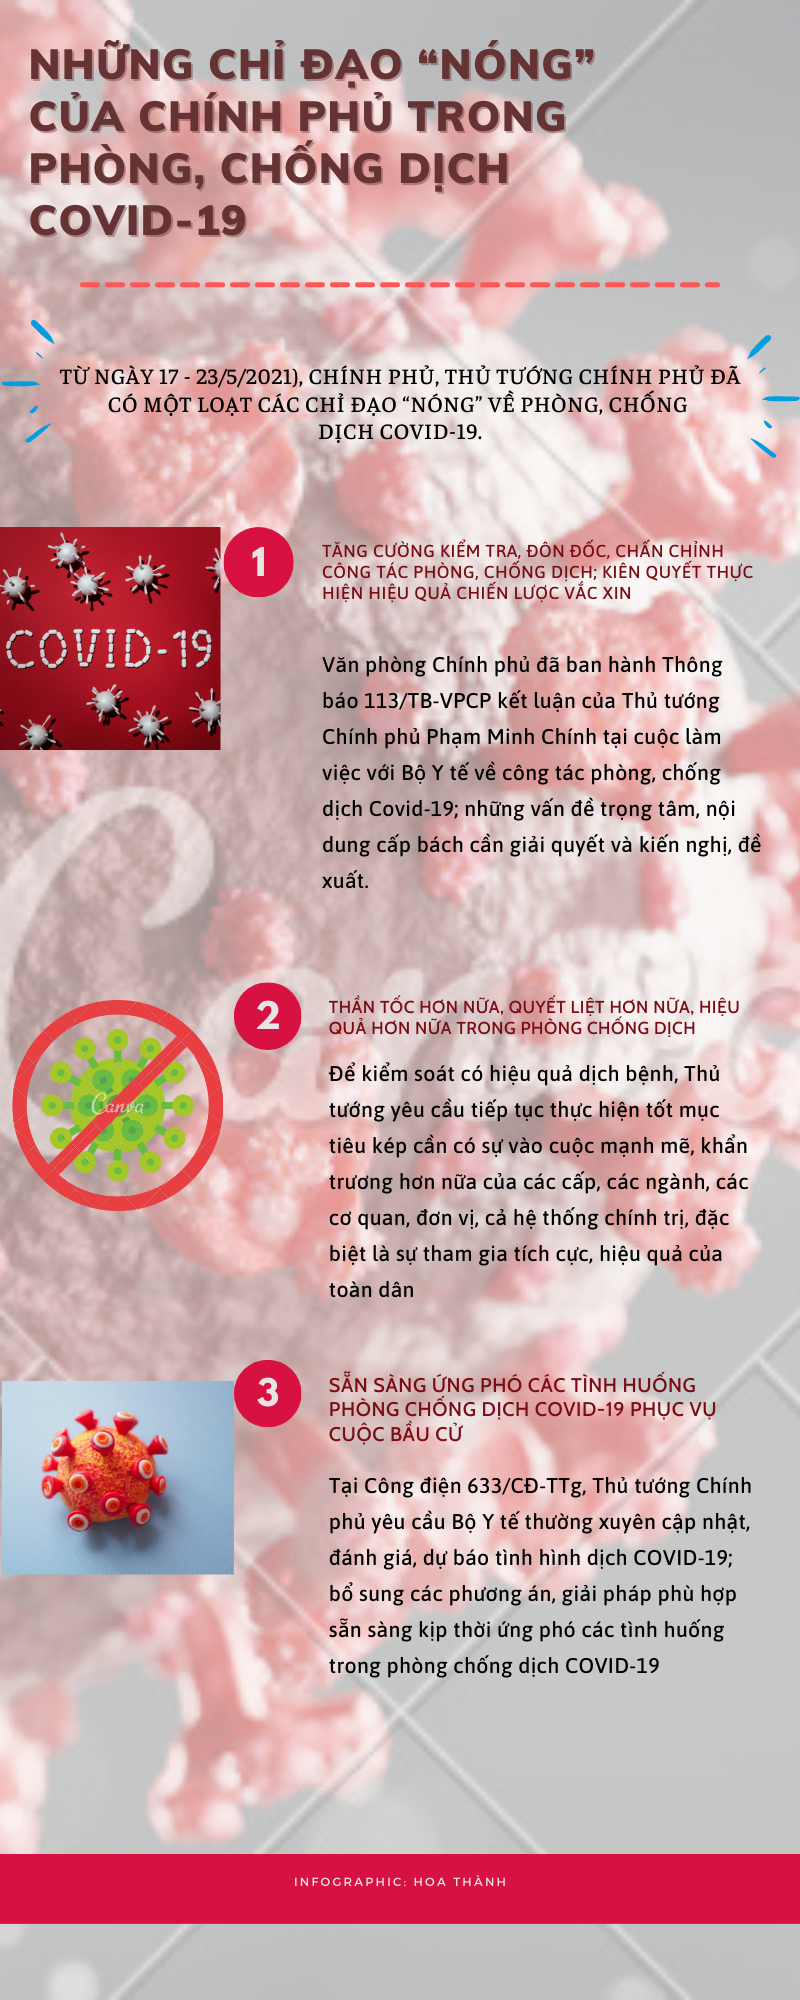 Infographic: Những chỉ đạo “nóng” trong phòng, chống dịch Covid-19